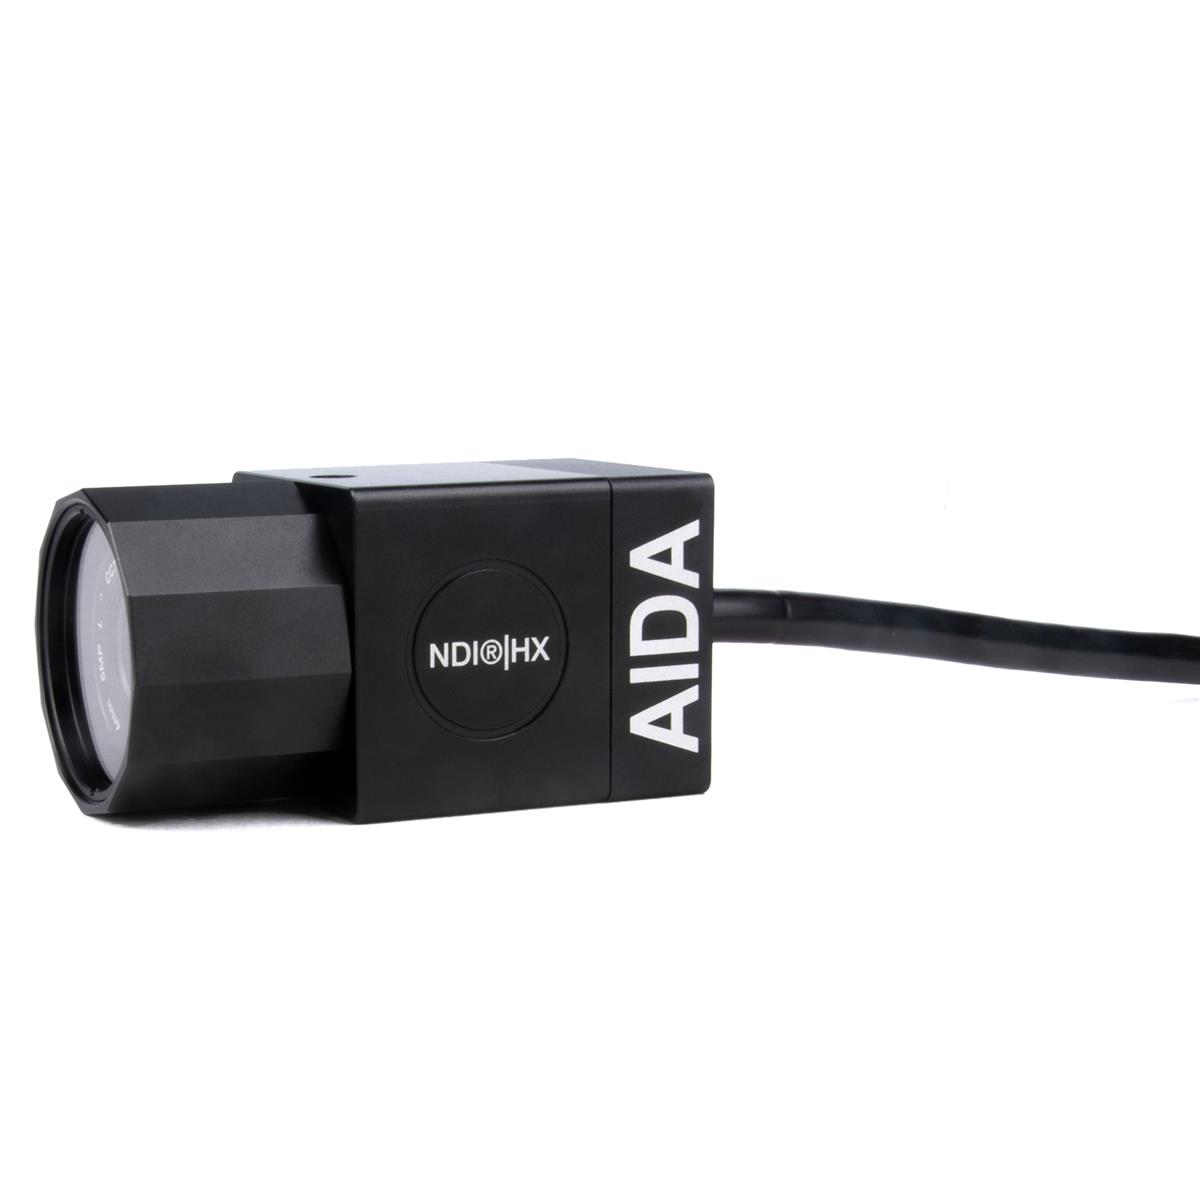 Image of AIDA HD-NDI-IP67 Full HD NDI|HX IP Weatherproof POV Camera